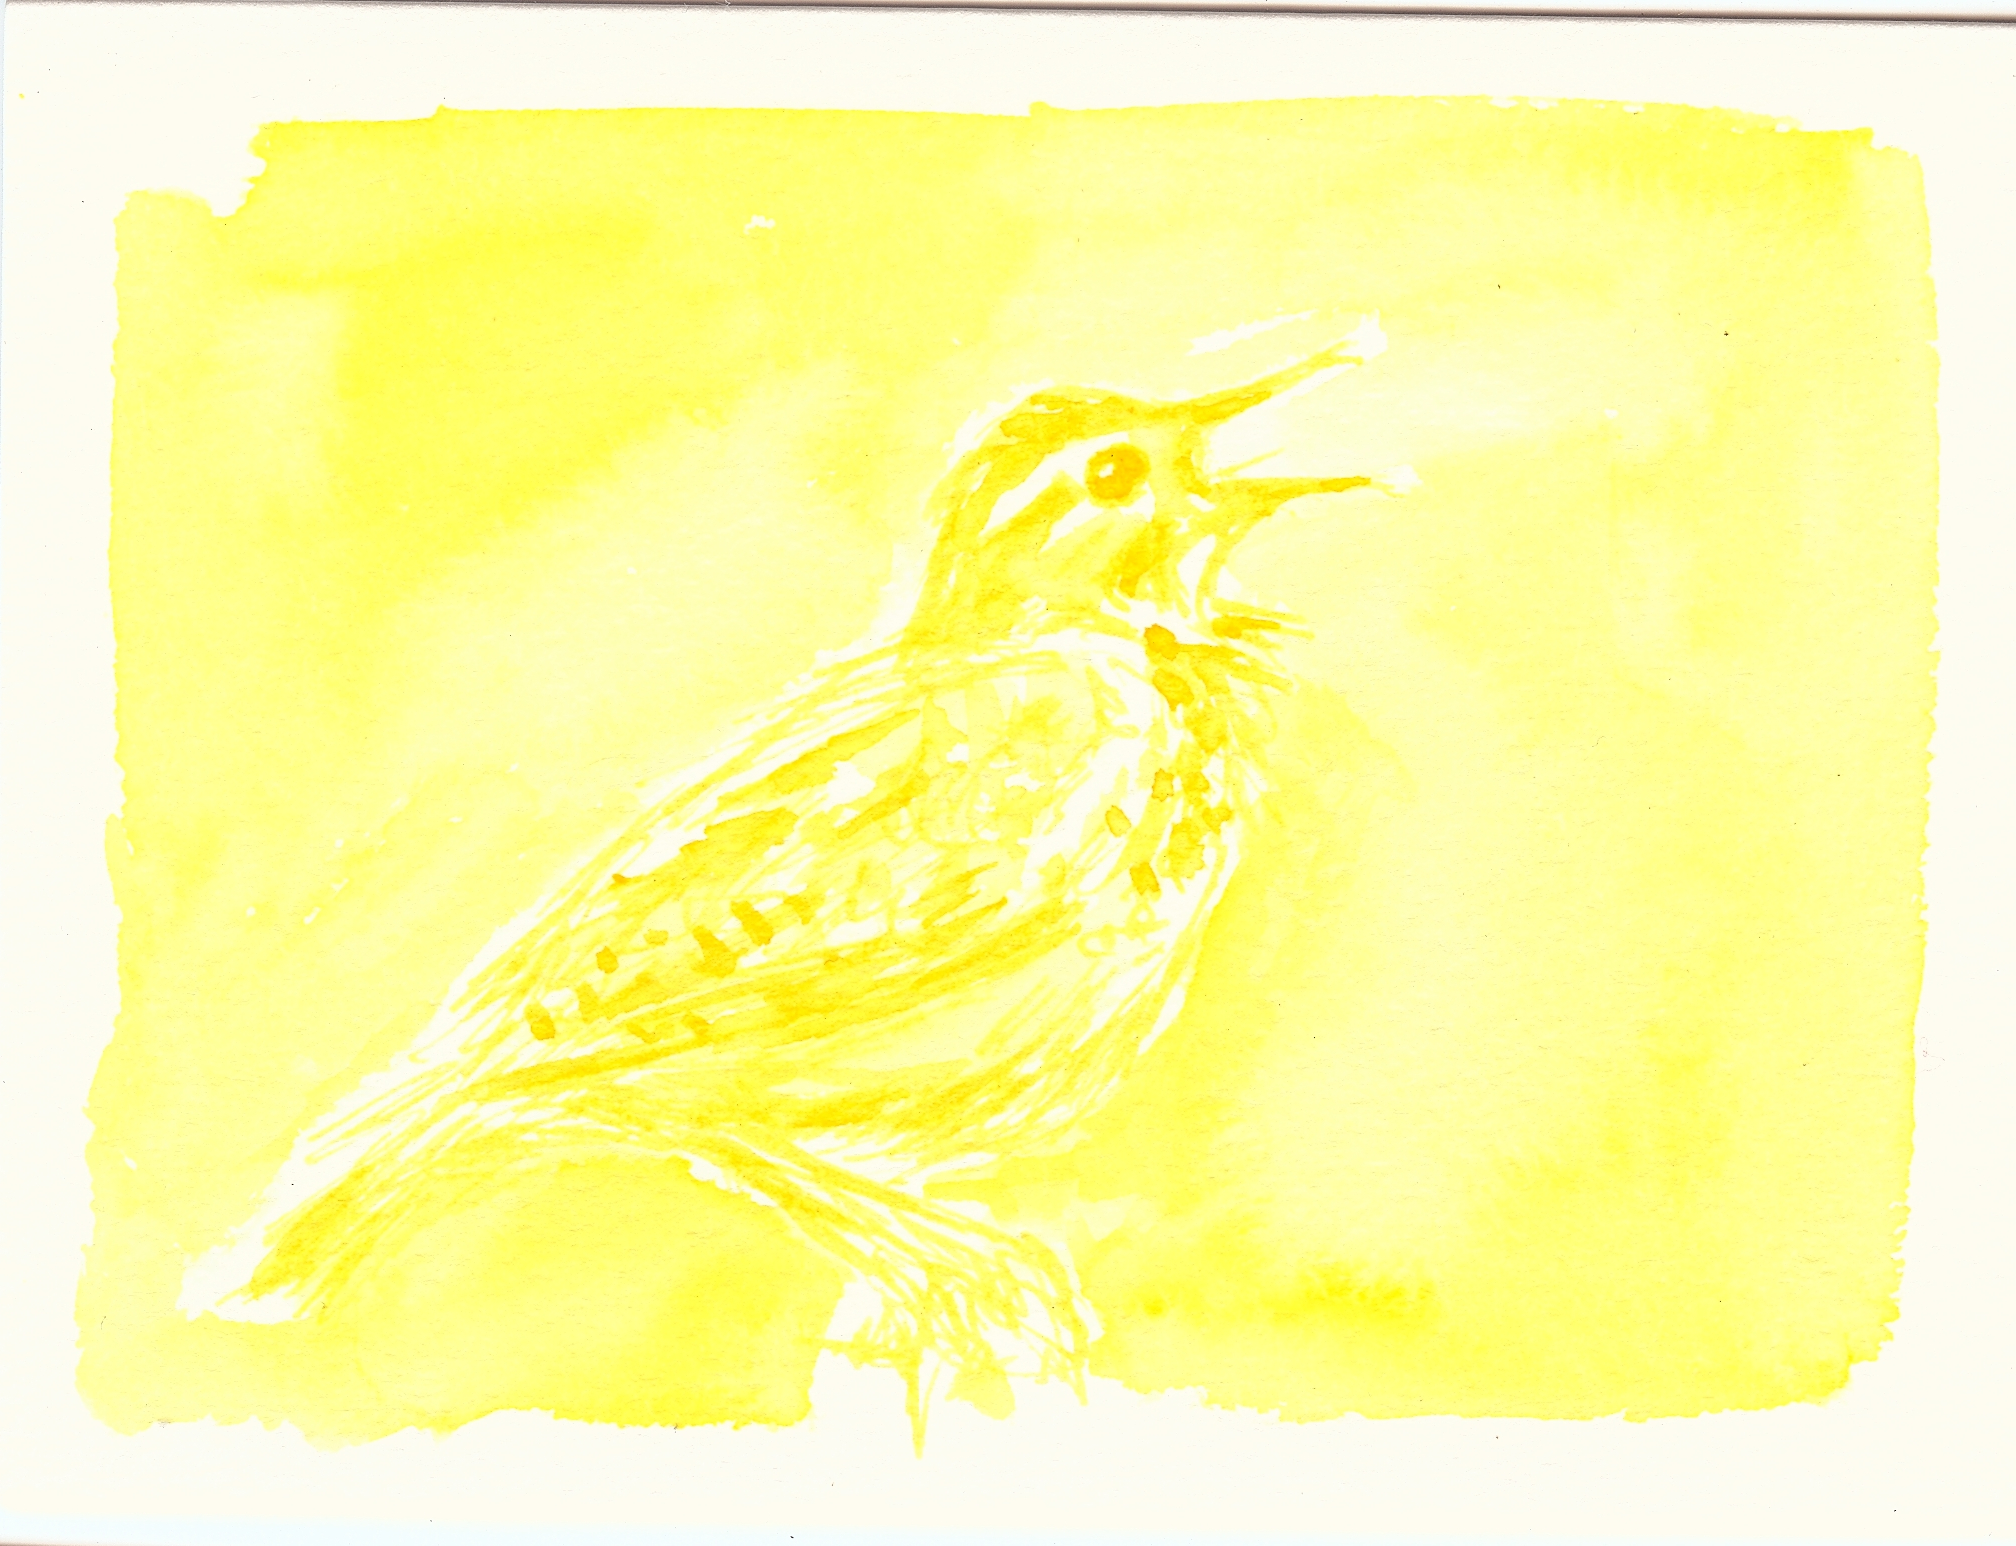 Meadowlark by Summer Lee, 2012. watercolor on paper